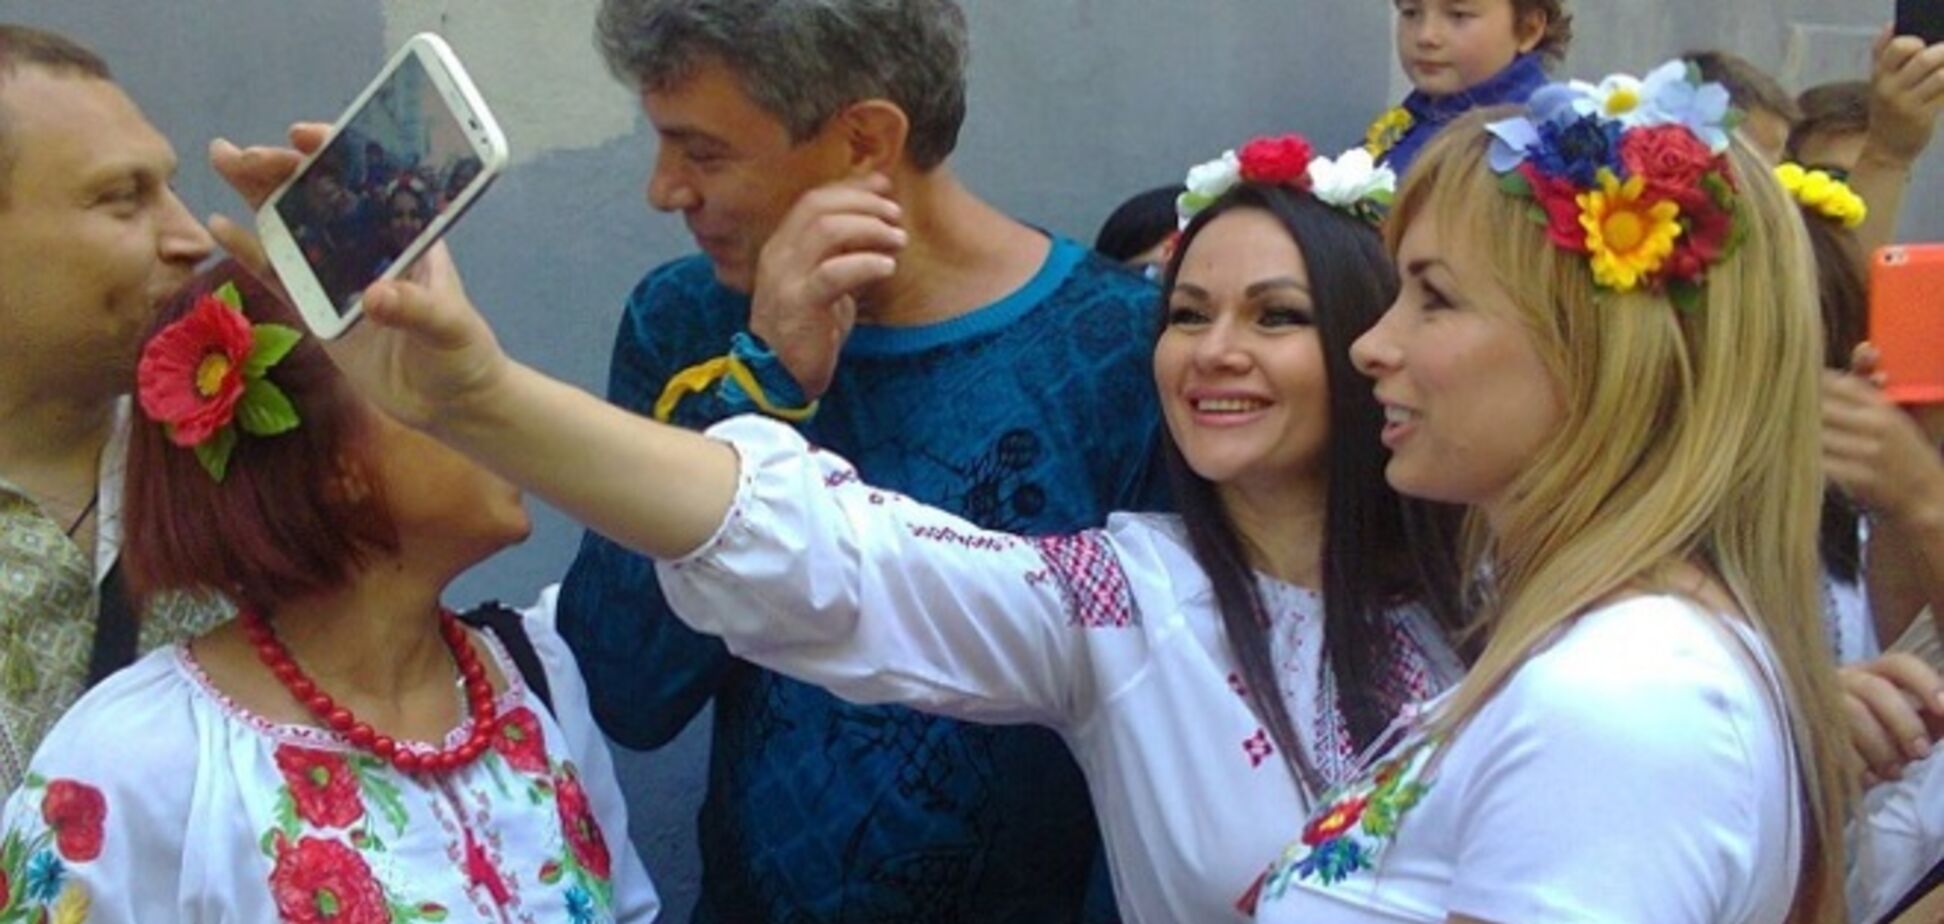 В Совфеде Немцова обвинили в экстремизме из-за участия в параде вышиванок в Одессе